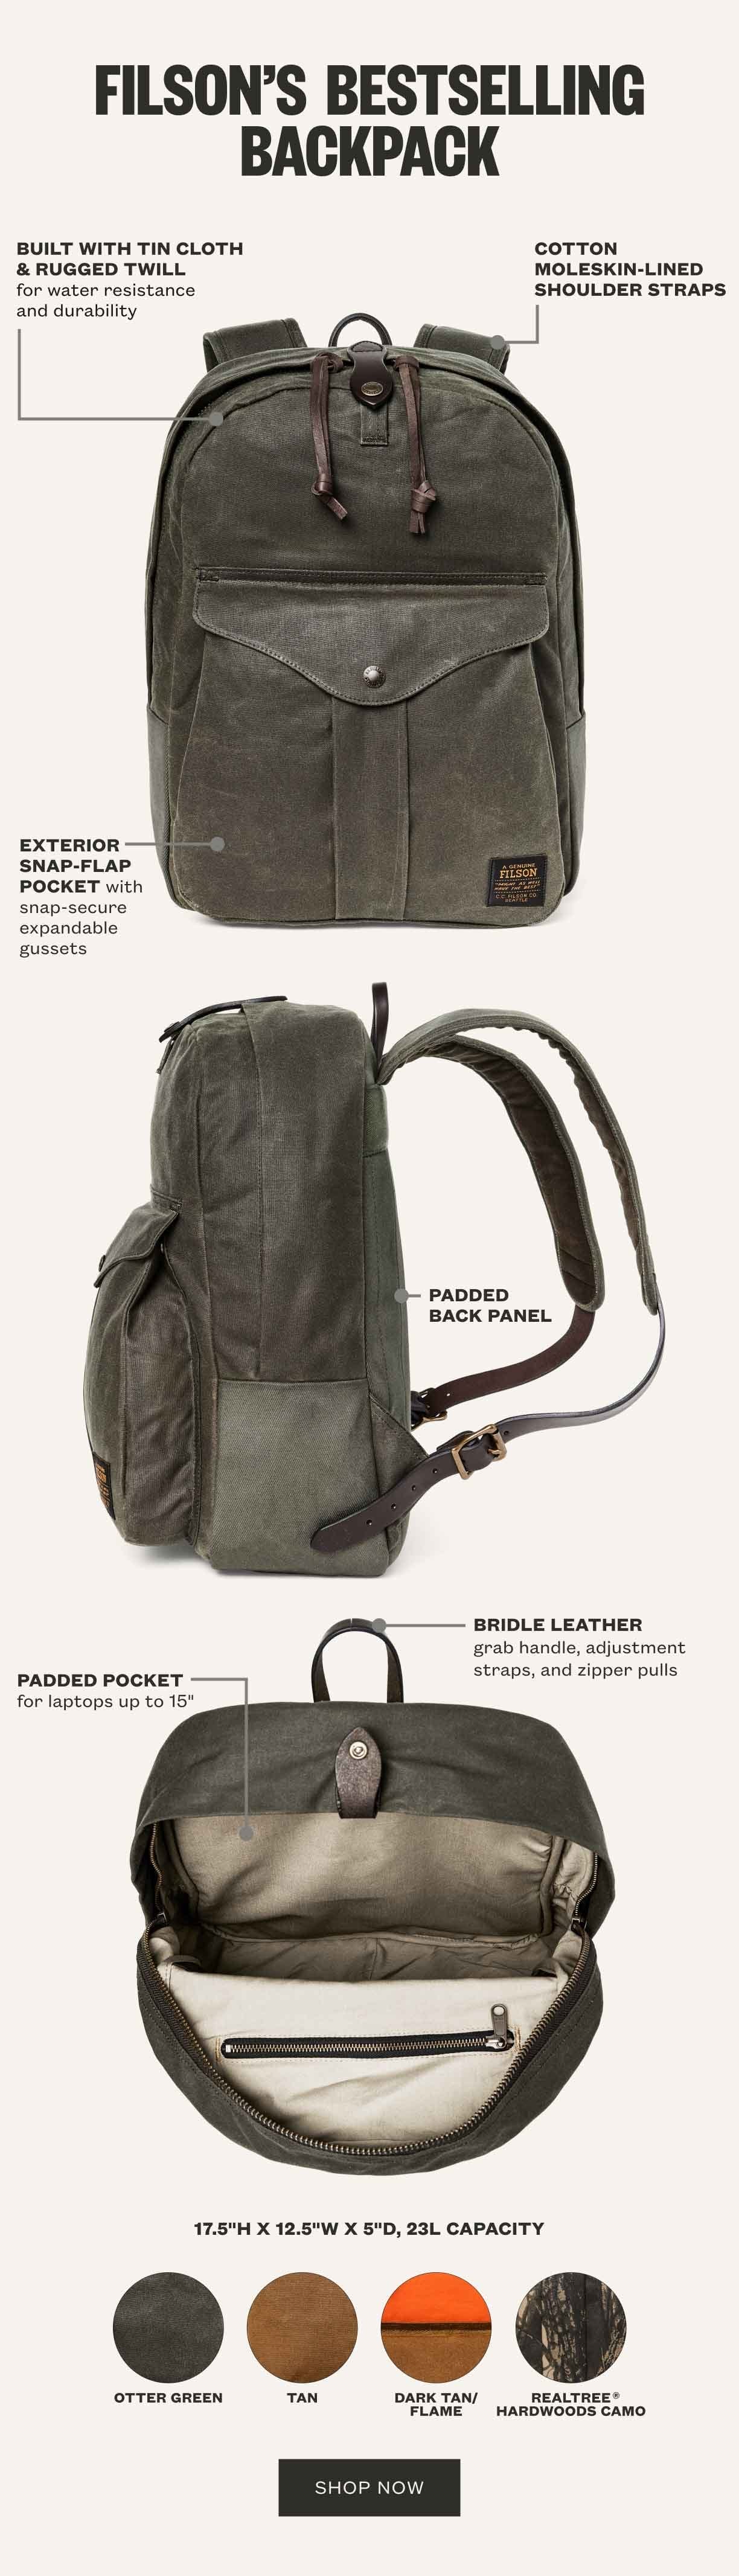 Filson's Bestselling Backpack